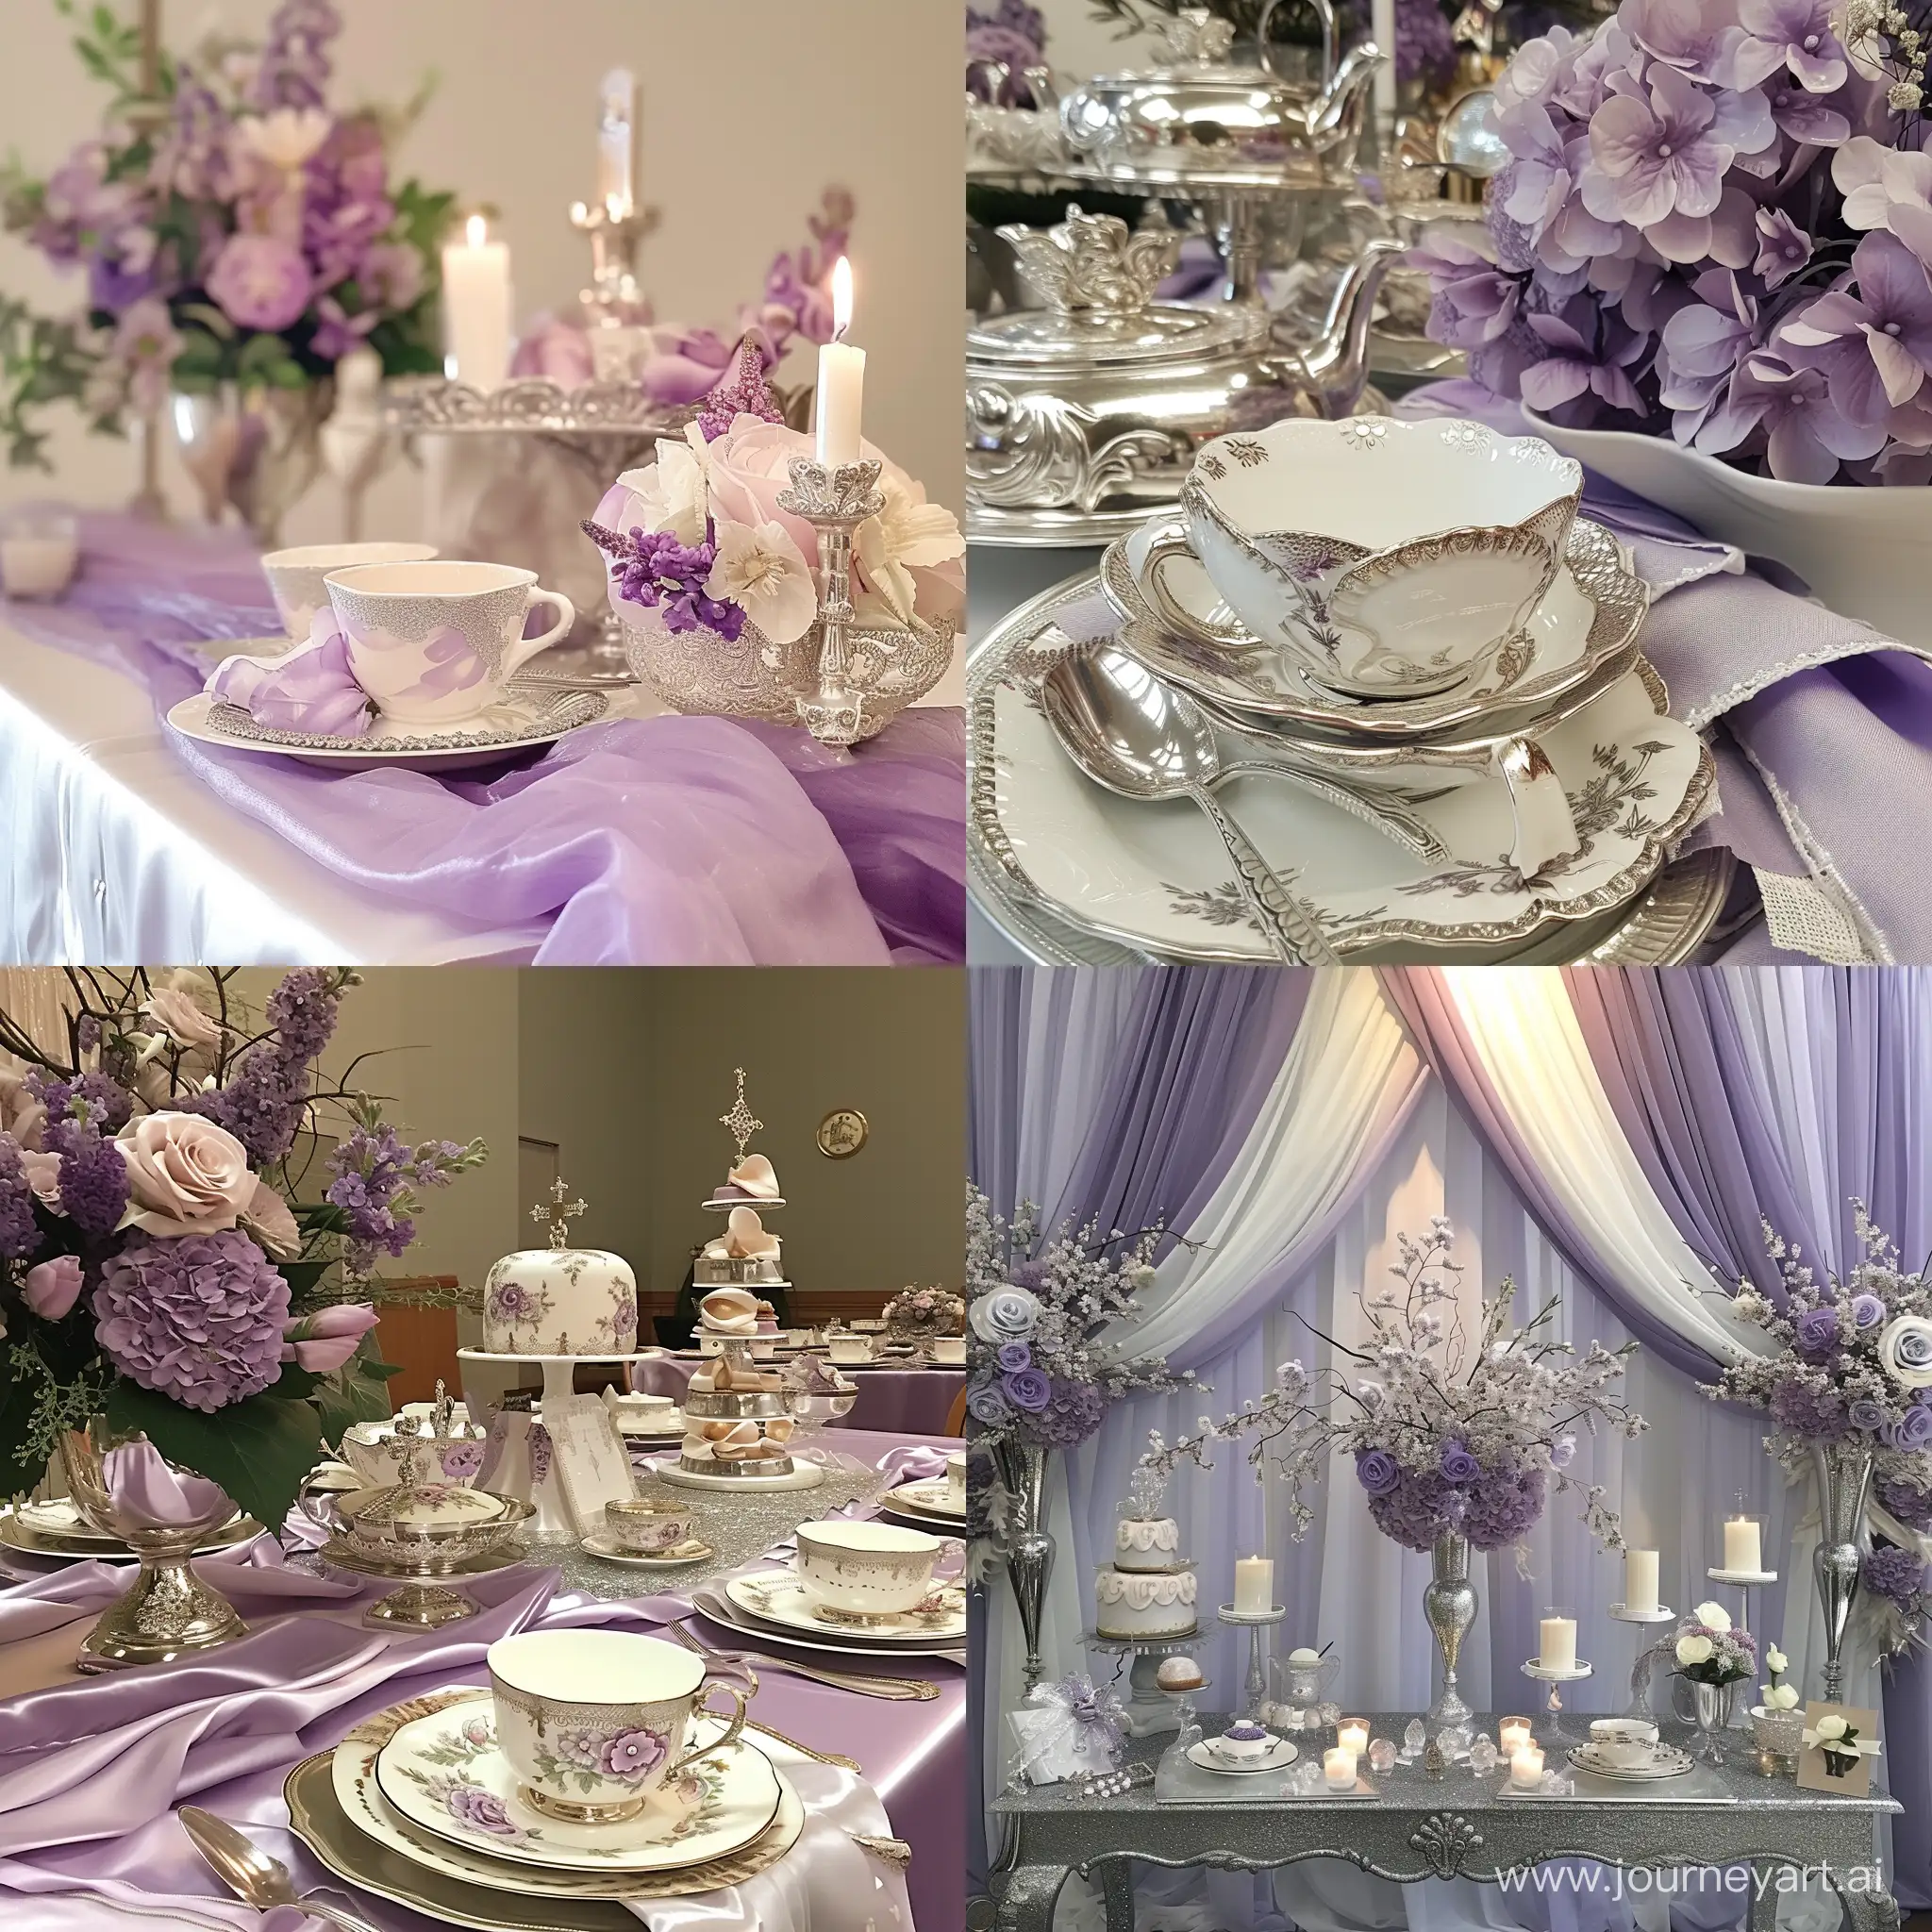 decoração para chá de mulheres na igreja nas cores lilás e prata